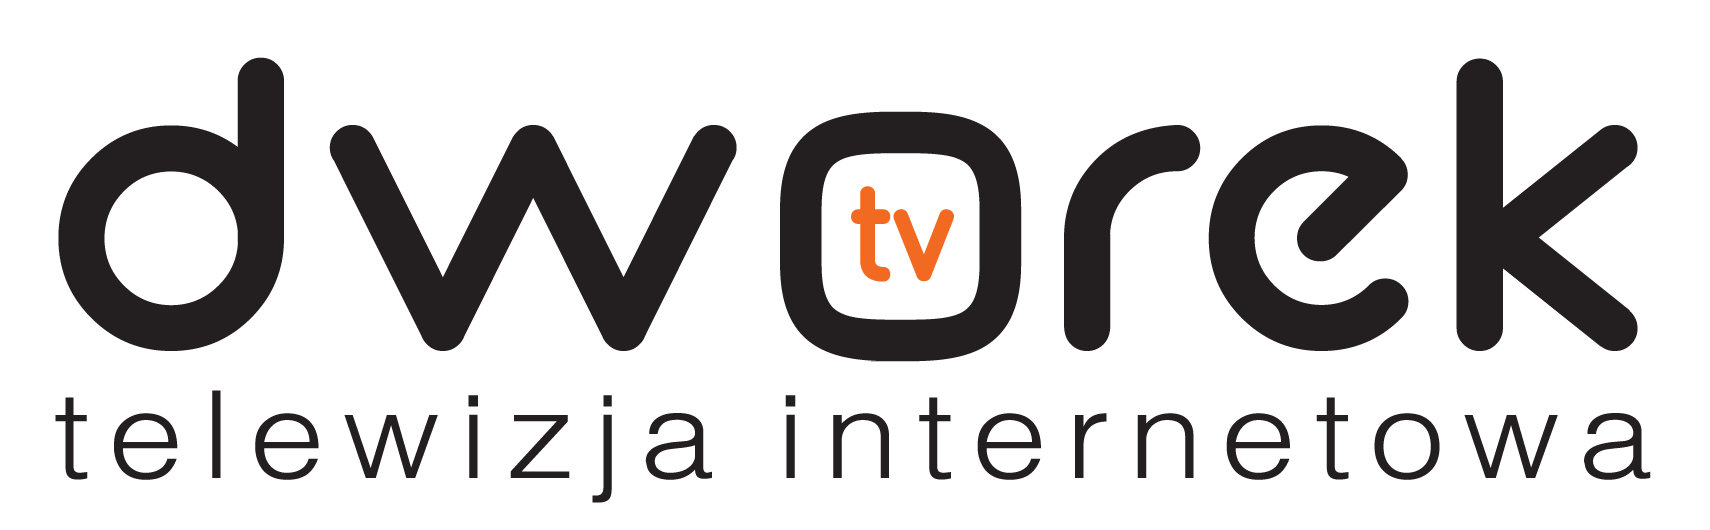 dworek tv telewizja internetowa logo